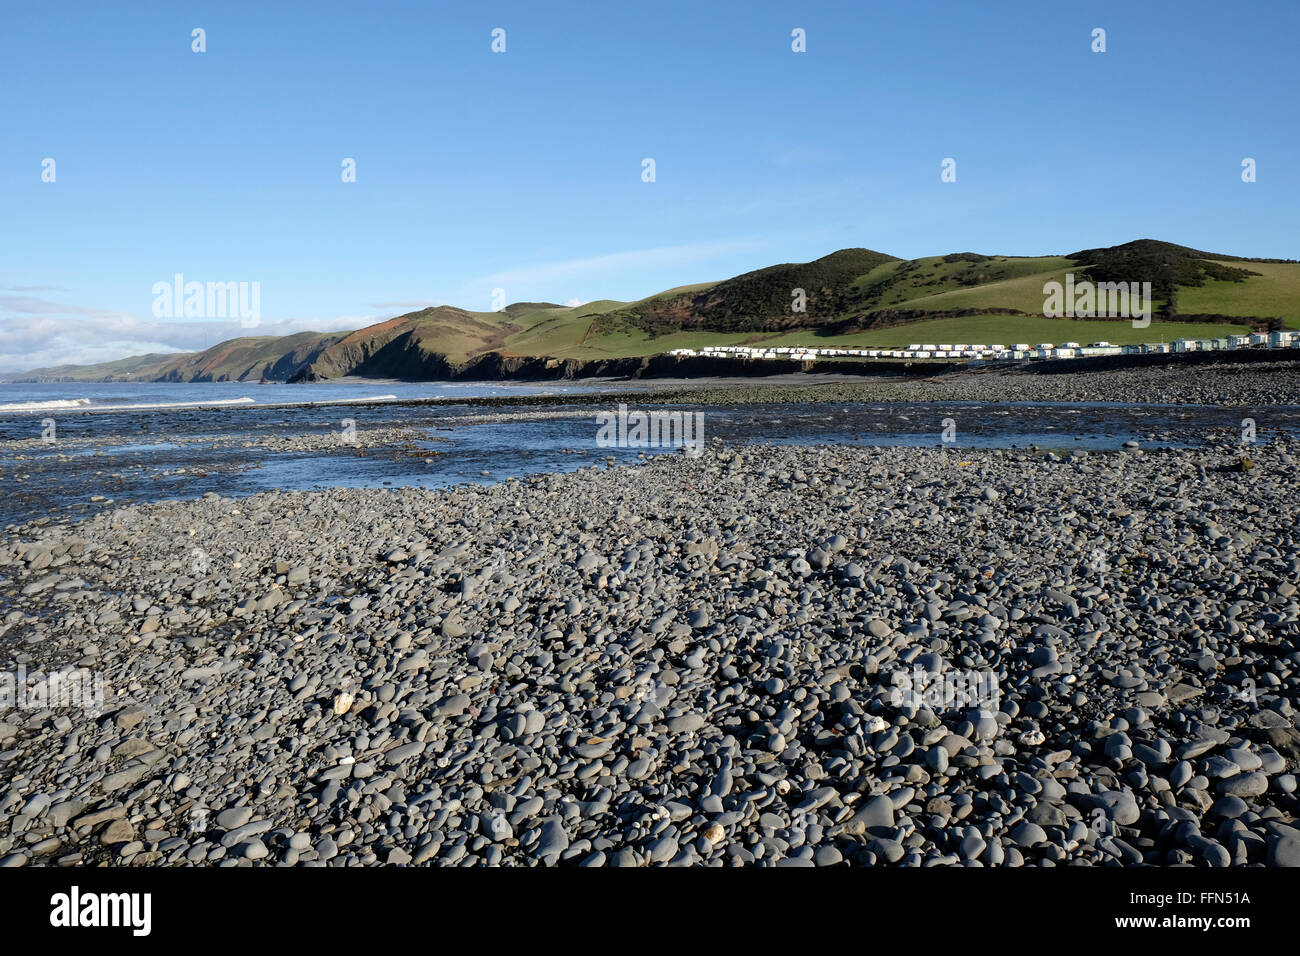 Llanrhystud plage à marée basse, à l'ouest du pays de Galles. Banque D'Images